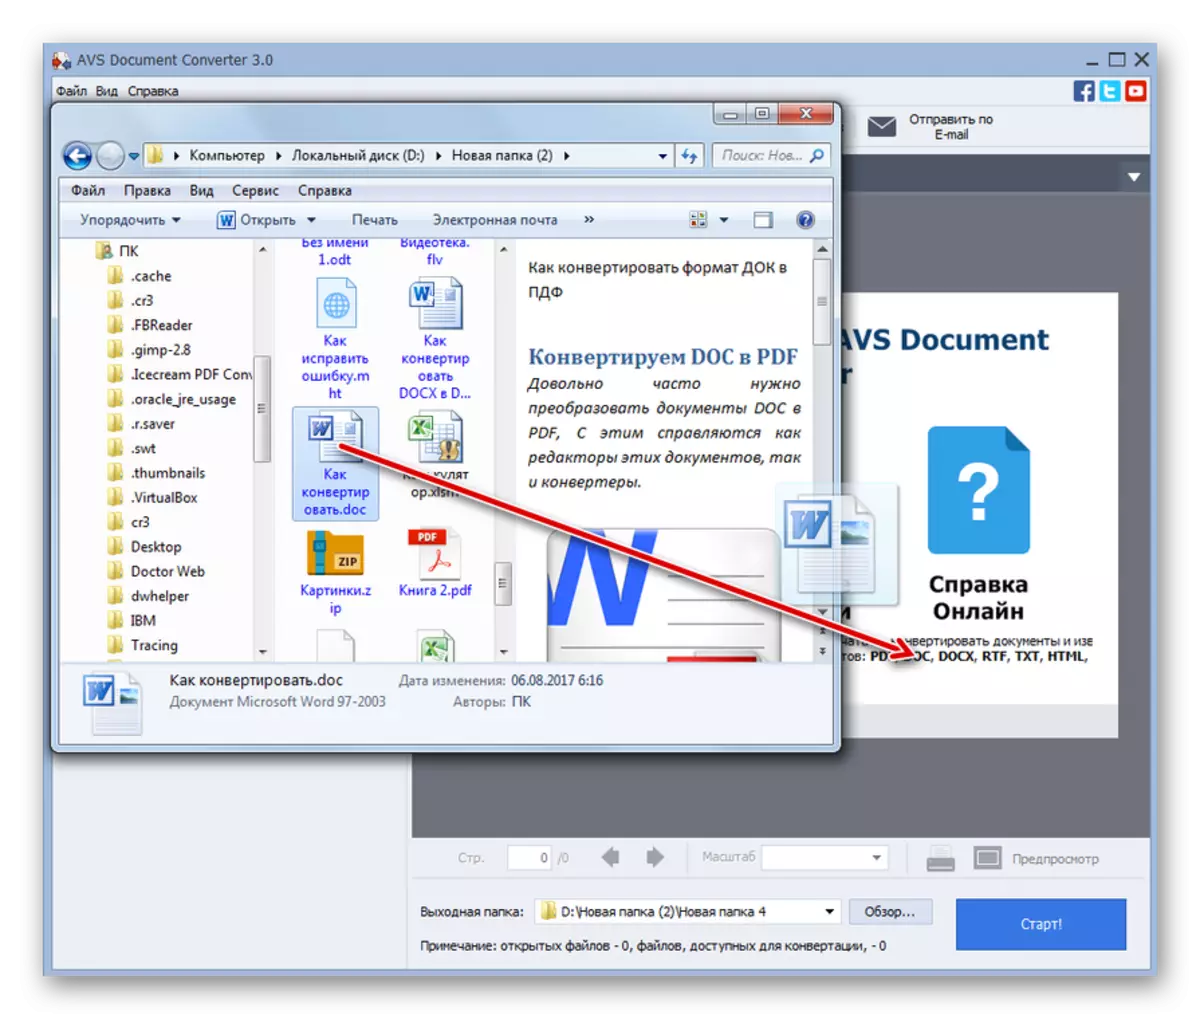 صحبت کردن یک فایل DOCX از ویندوز اکسپلورر در AVS Document Converter